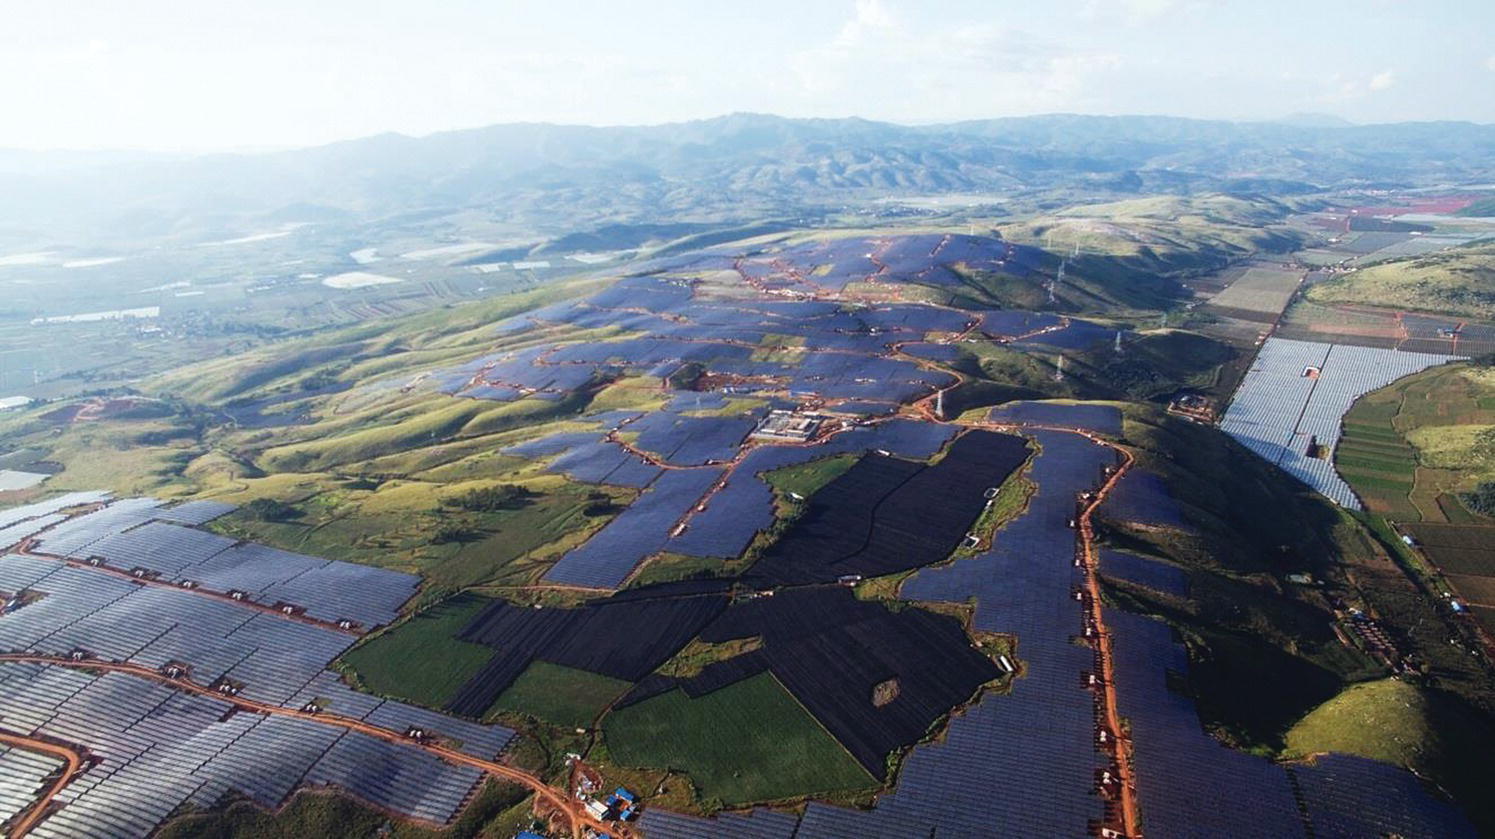 Aerial view of the 300 MWac PV power plant at Yunnan Jianshui, China